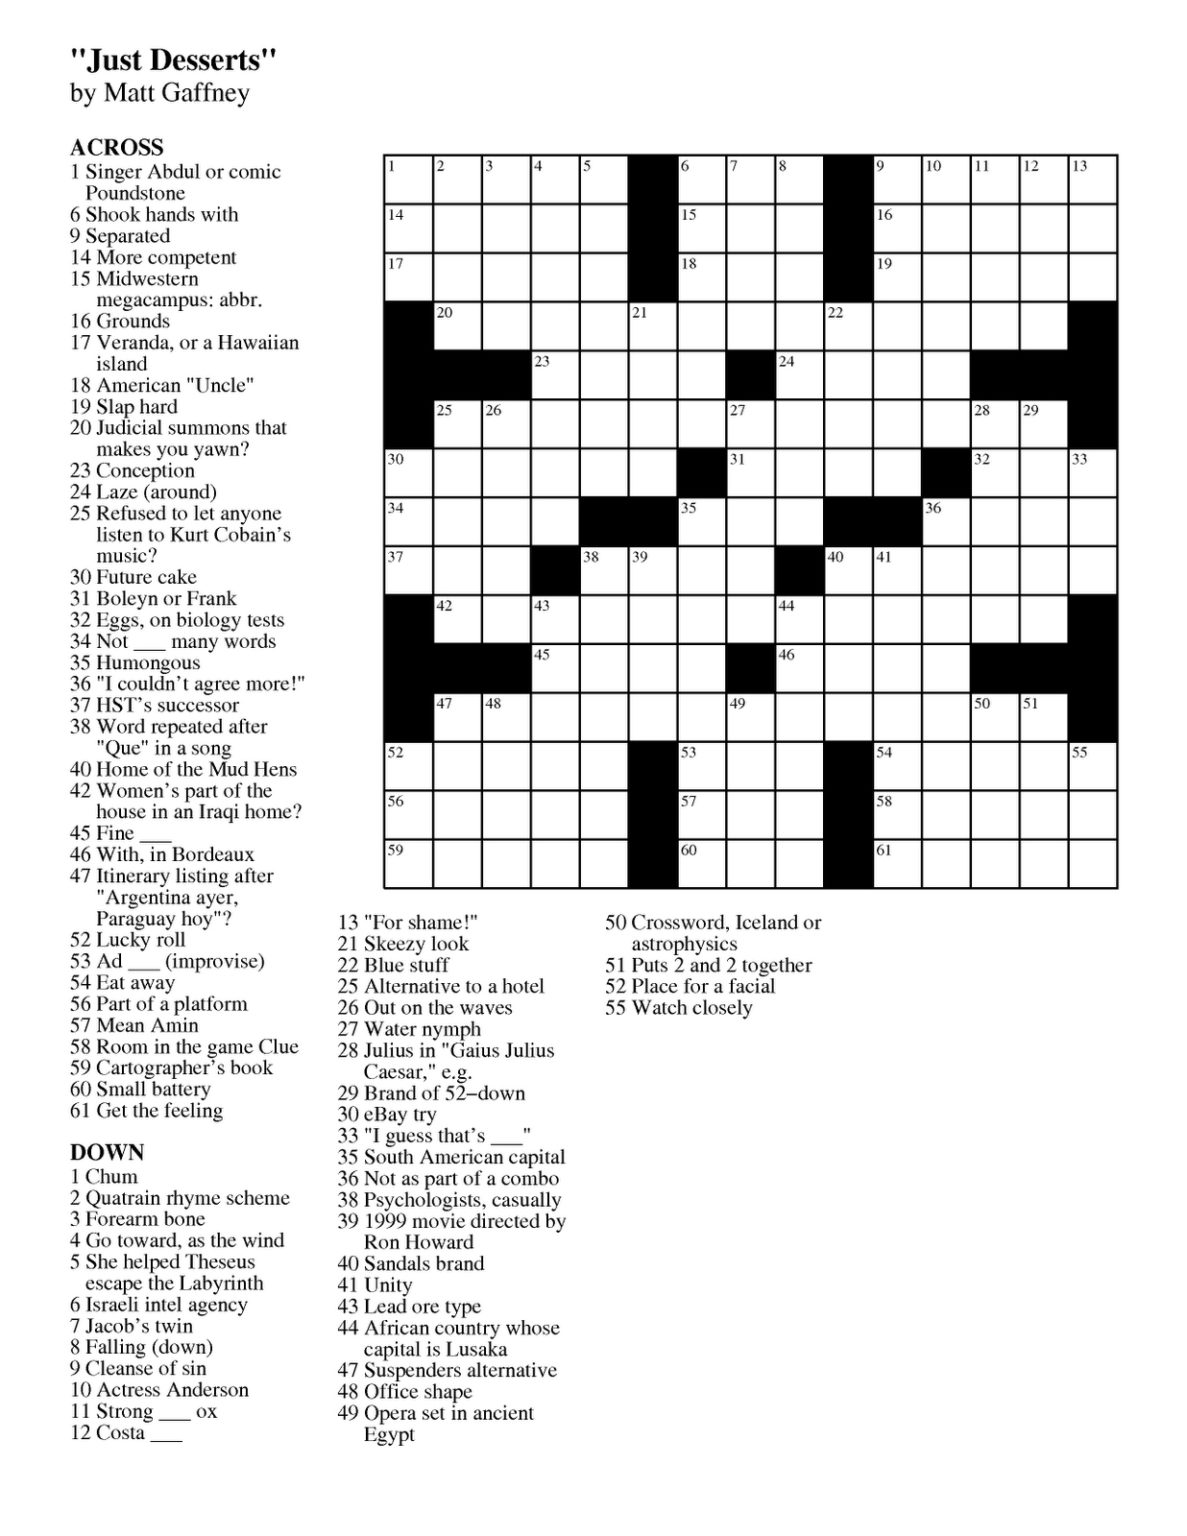 Printable Nea Crossword Puzzle Printable Crossword Puzzles | Printable Crossword Puzzles Online